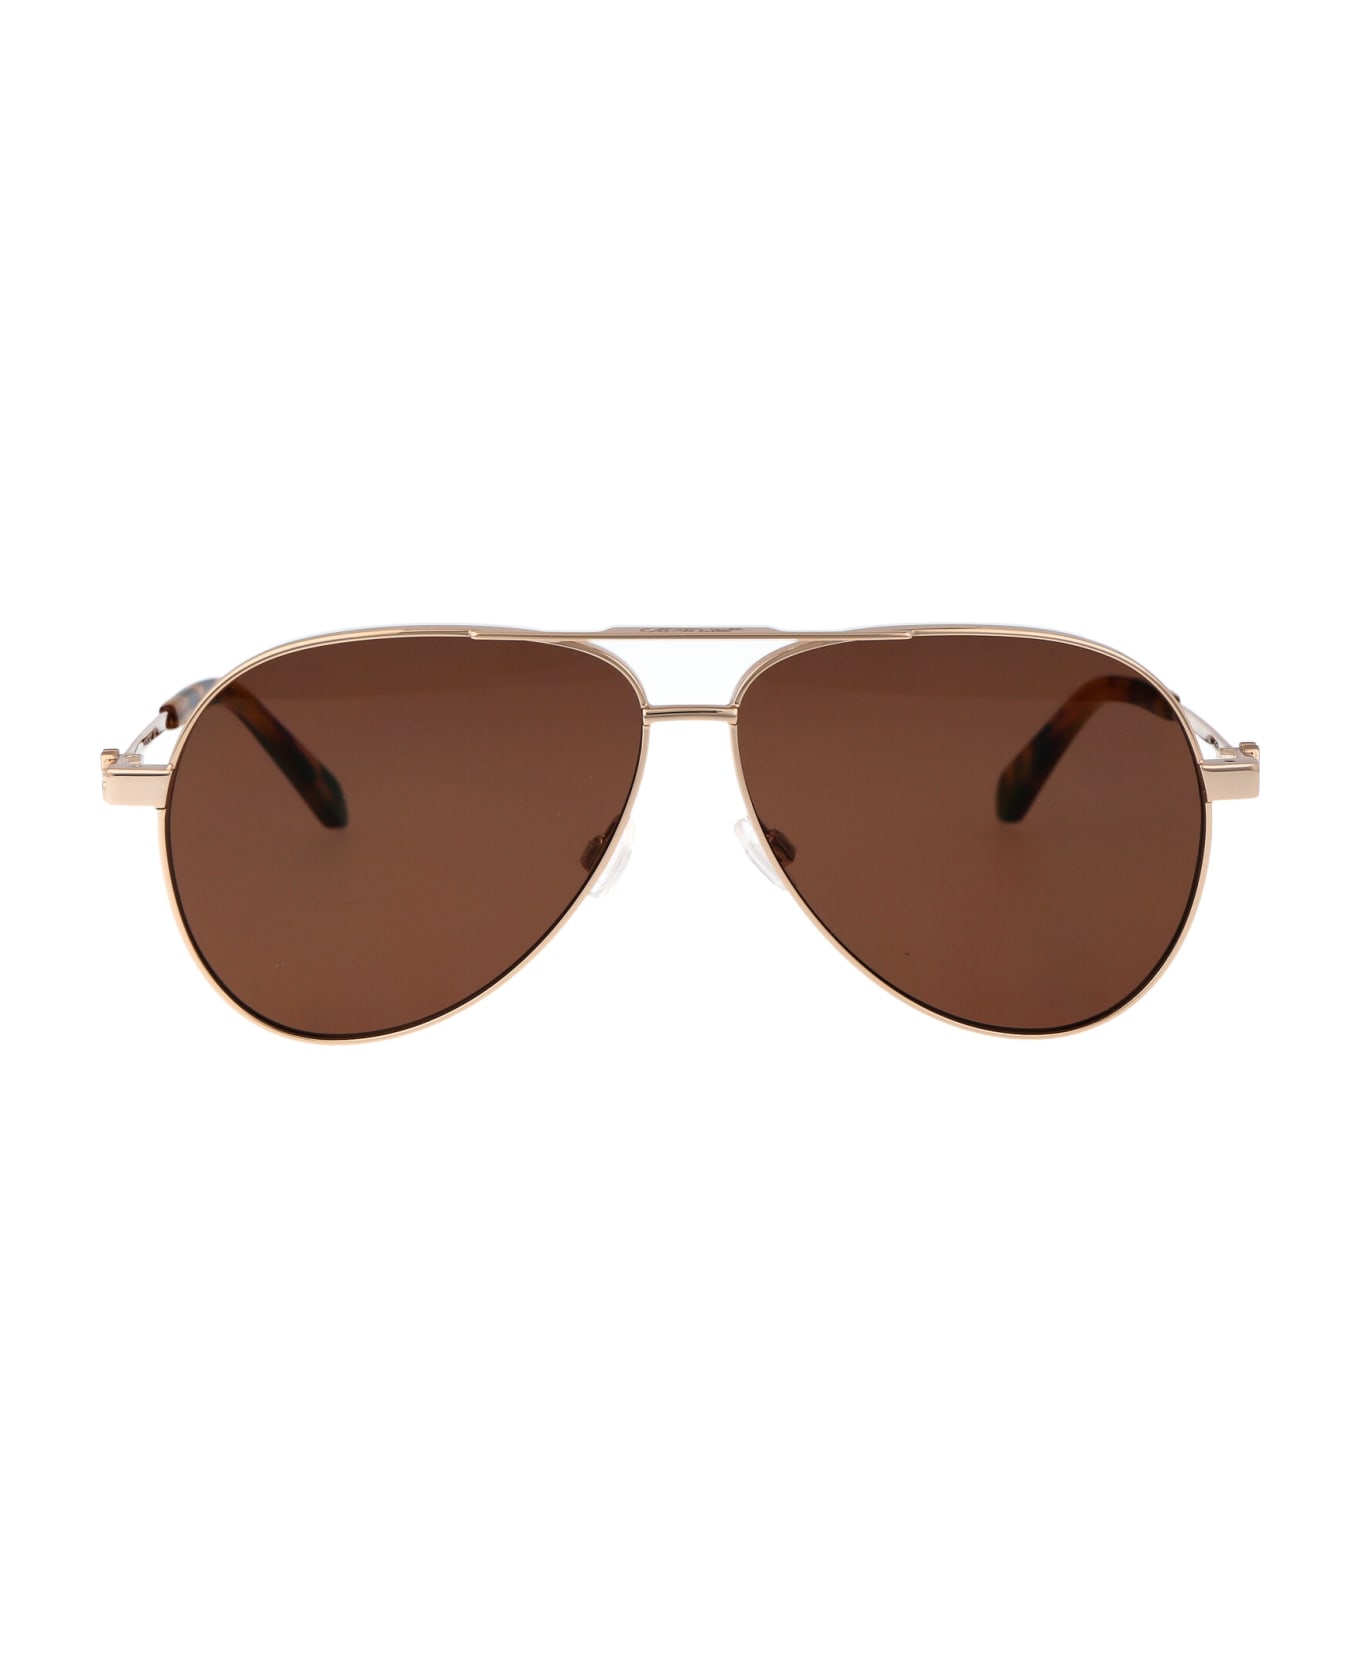 Off-White Ruston L Sunglasses - 7664 GOLD BROWN 